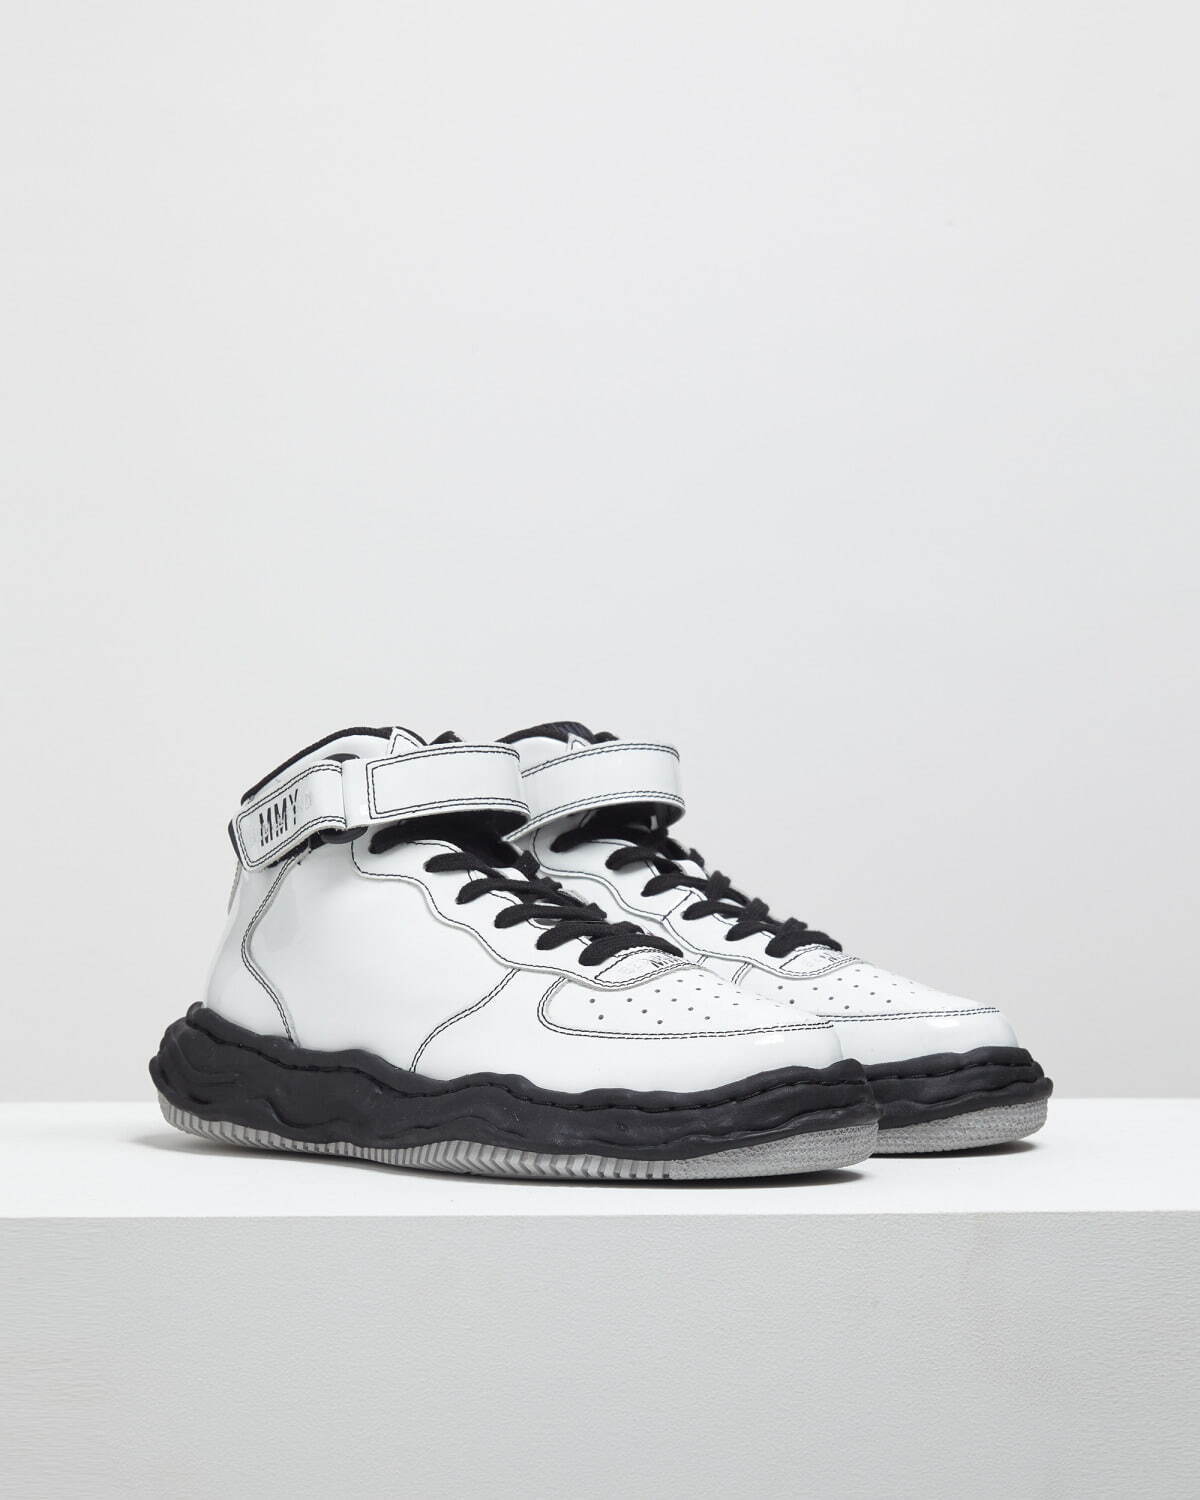 “ウェイン" OG Sole Patent Leather High-top Sneaker 57,200円